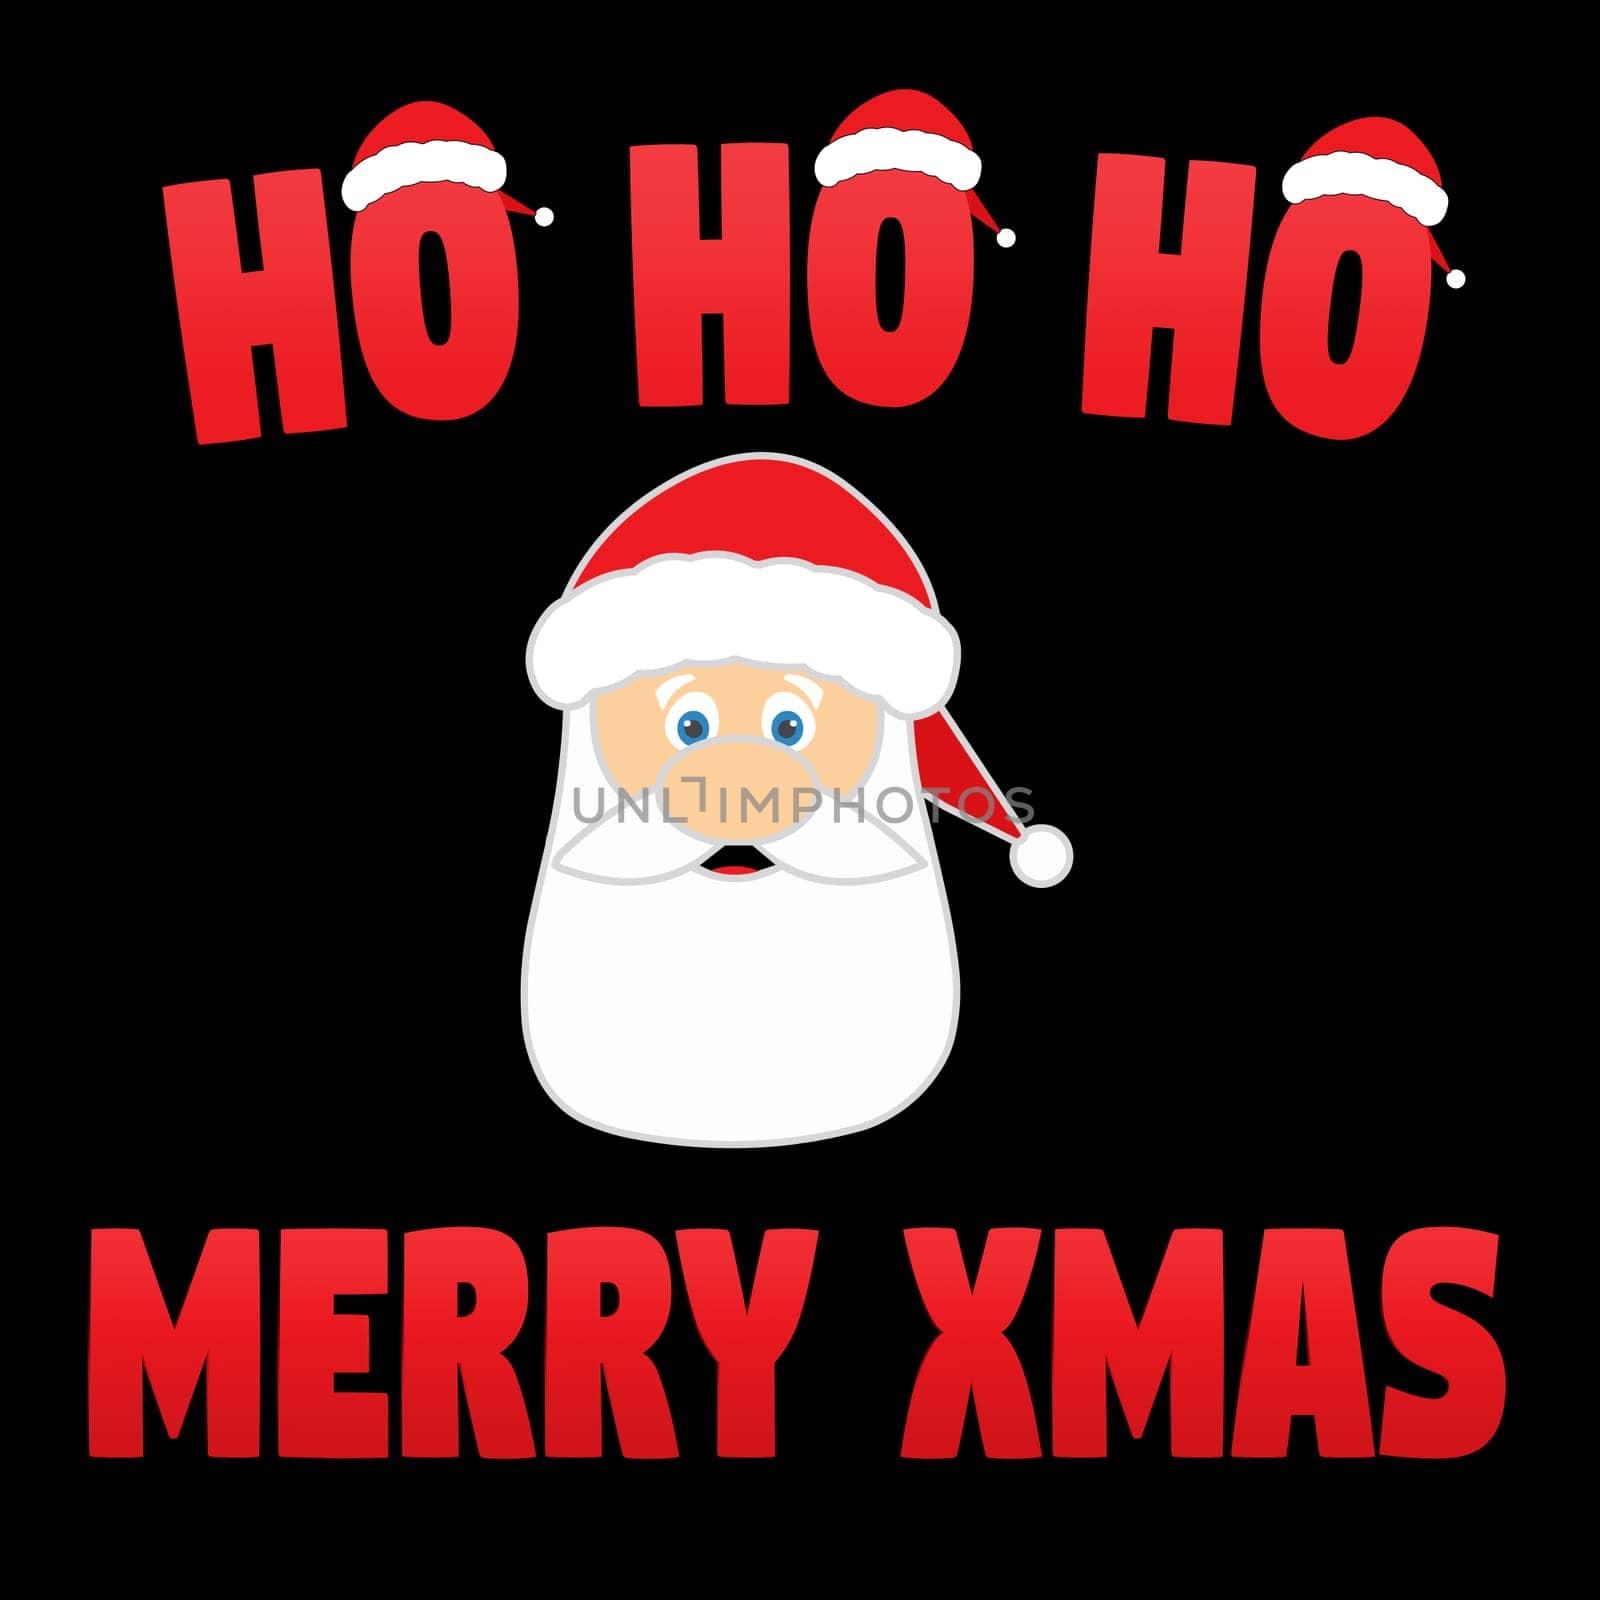 A santa's face with the text "ho ho ho Merry Xmas